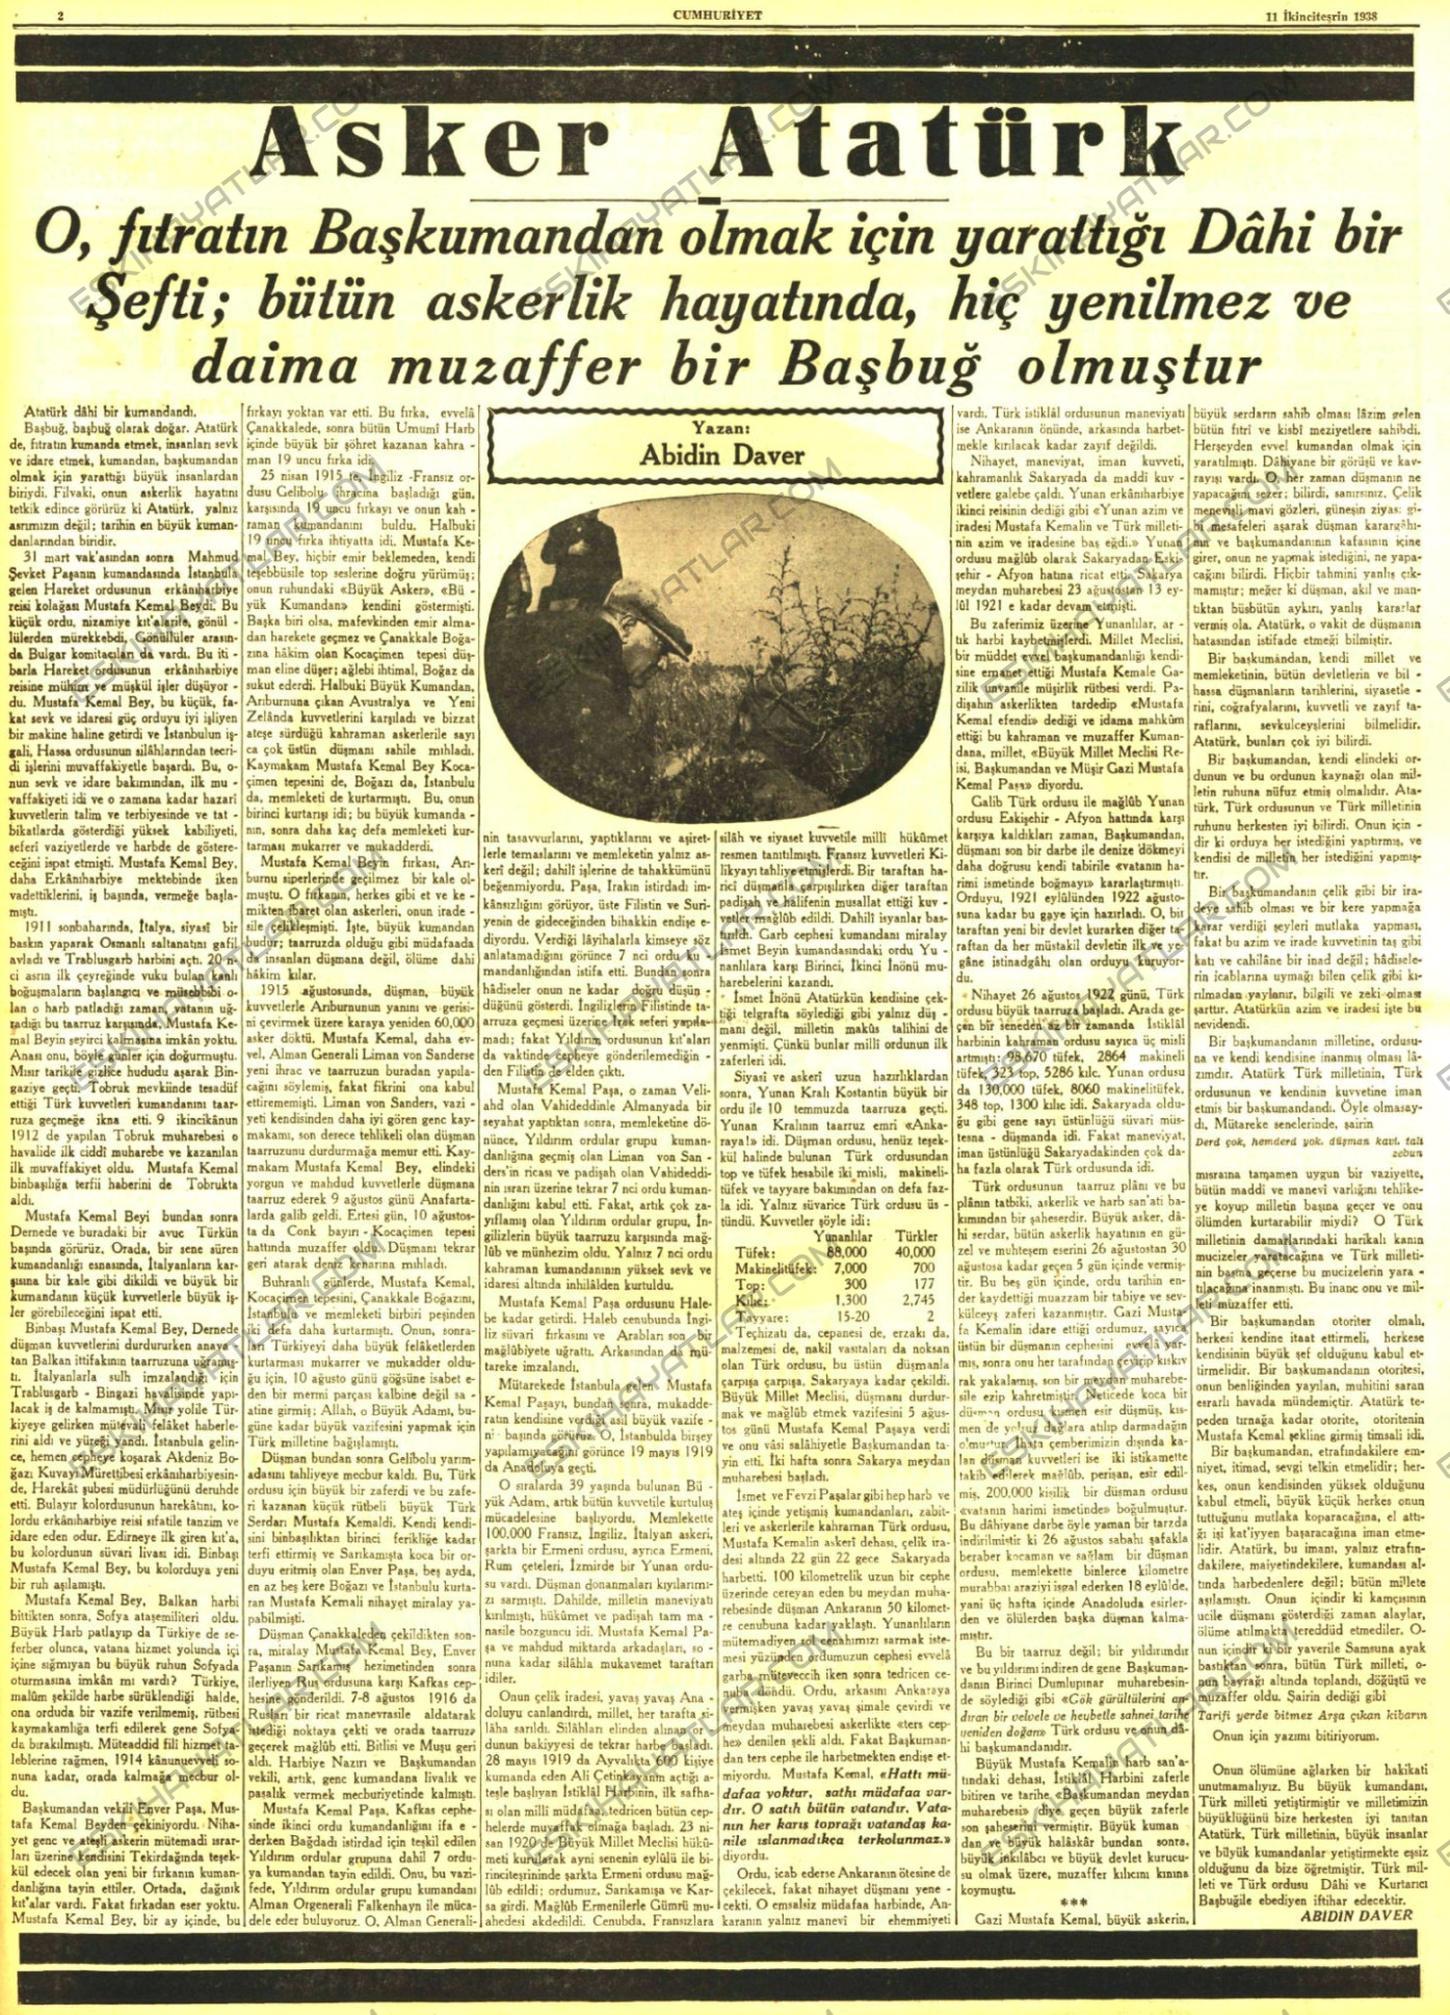 mustafa-kemal-ataturk-un-oldugu-gun-cikan-gazeteler-1938-yilinin-gazeteleri (2)